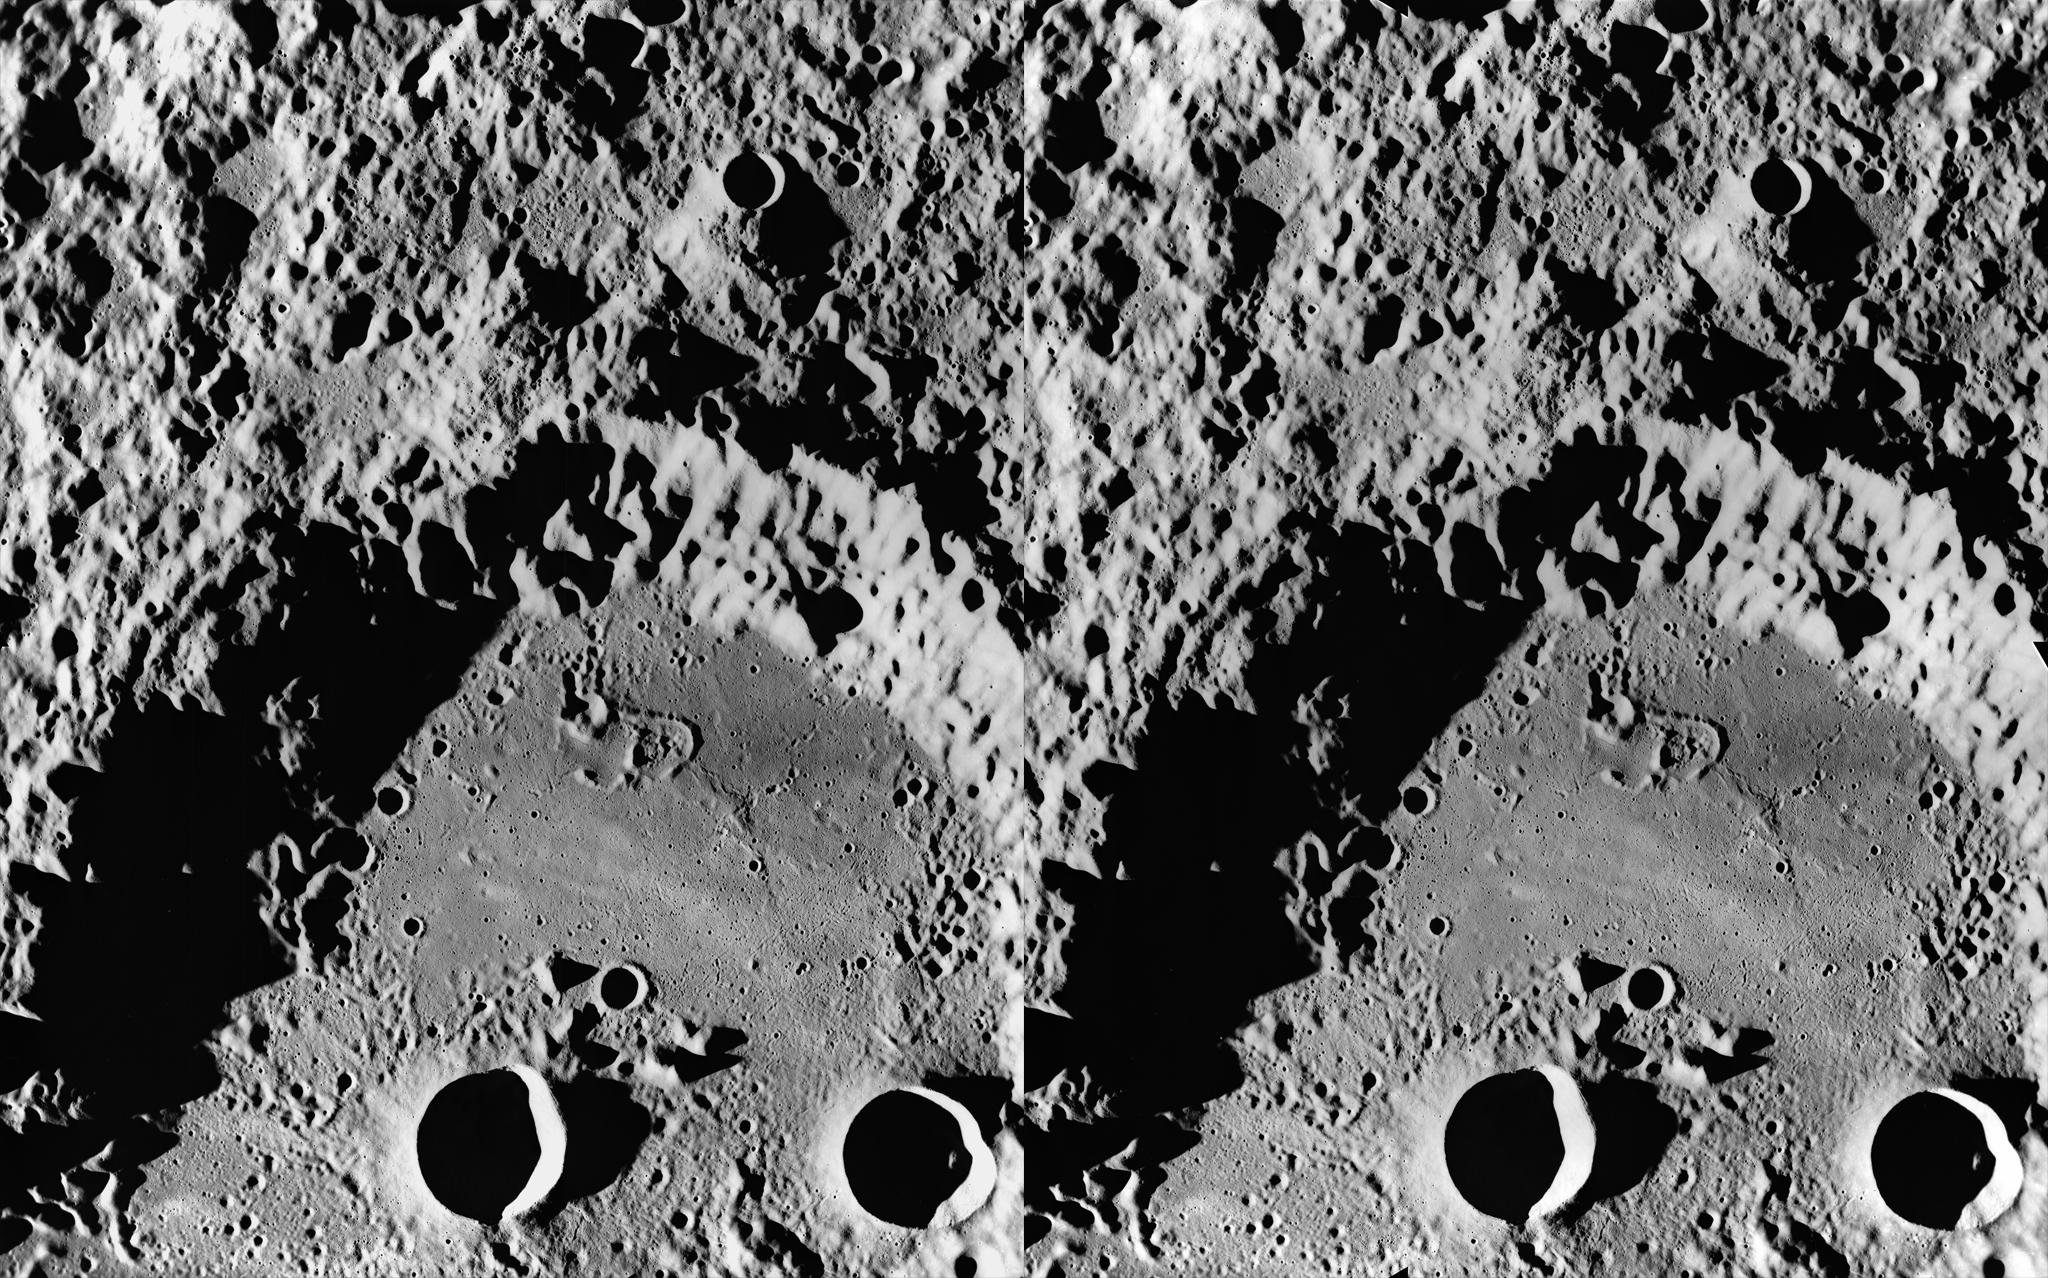 Первые снимки обратной стороны луны. Кратер Ван де Грааф на Луне. Снимки обратной стороны Луны высокого разрешения. Обратная сторона Луны. Спутник на обратной стороне Луны.